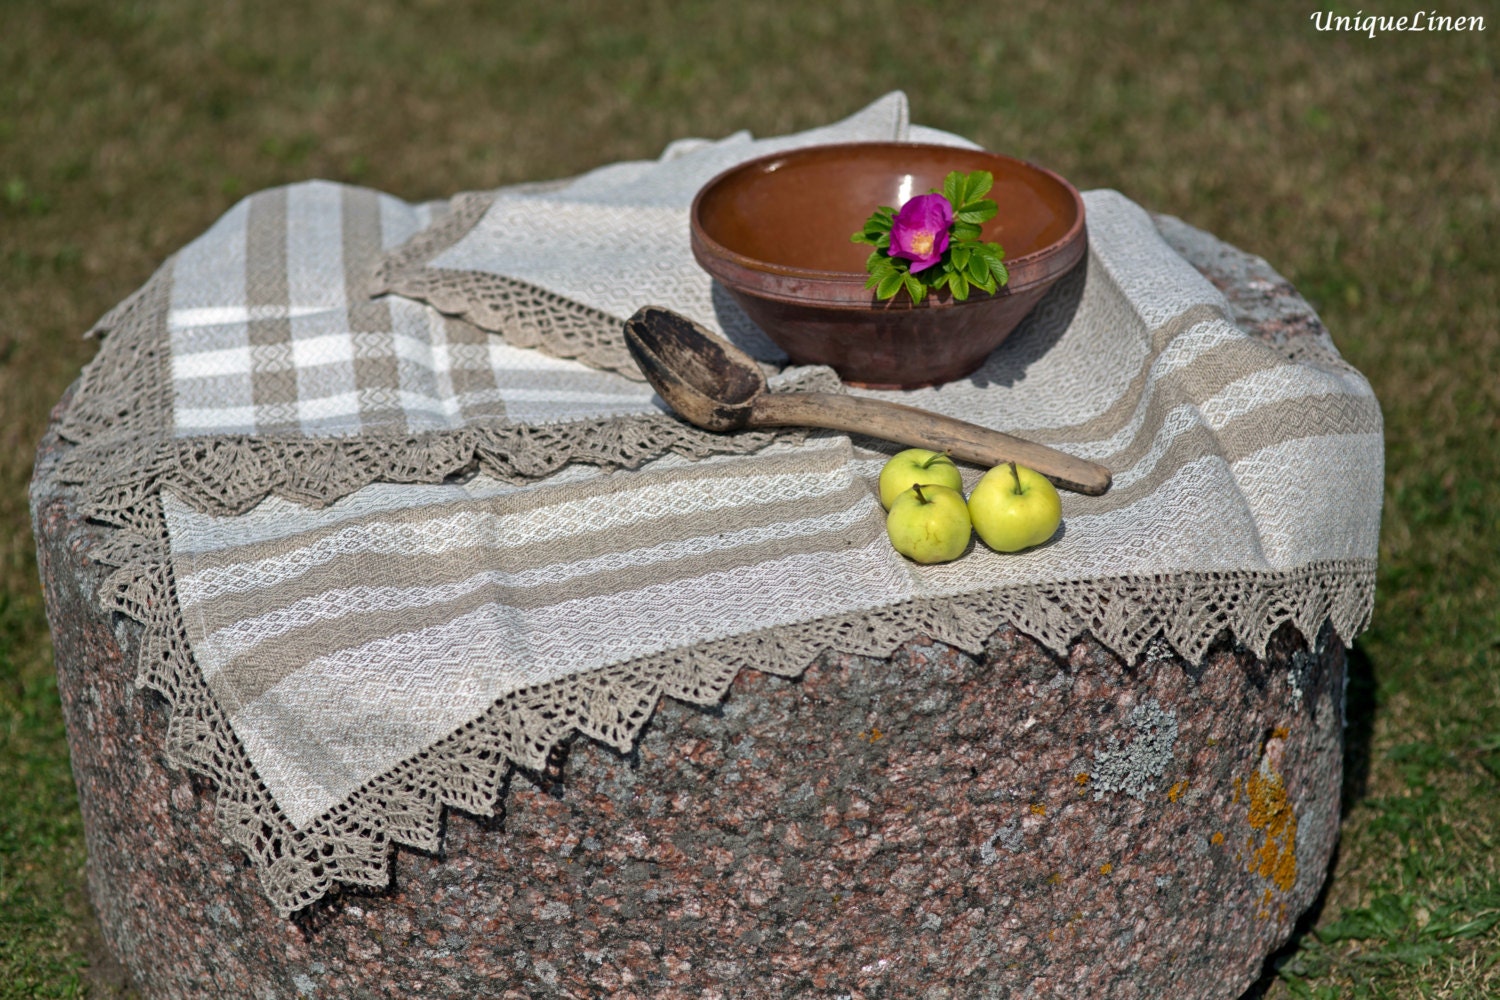 SALE PRICE! Linen tablecloth - UniqueLinen